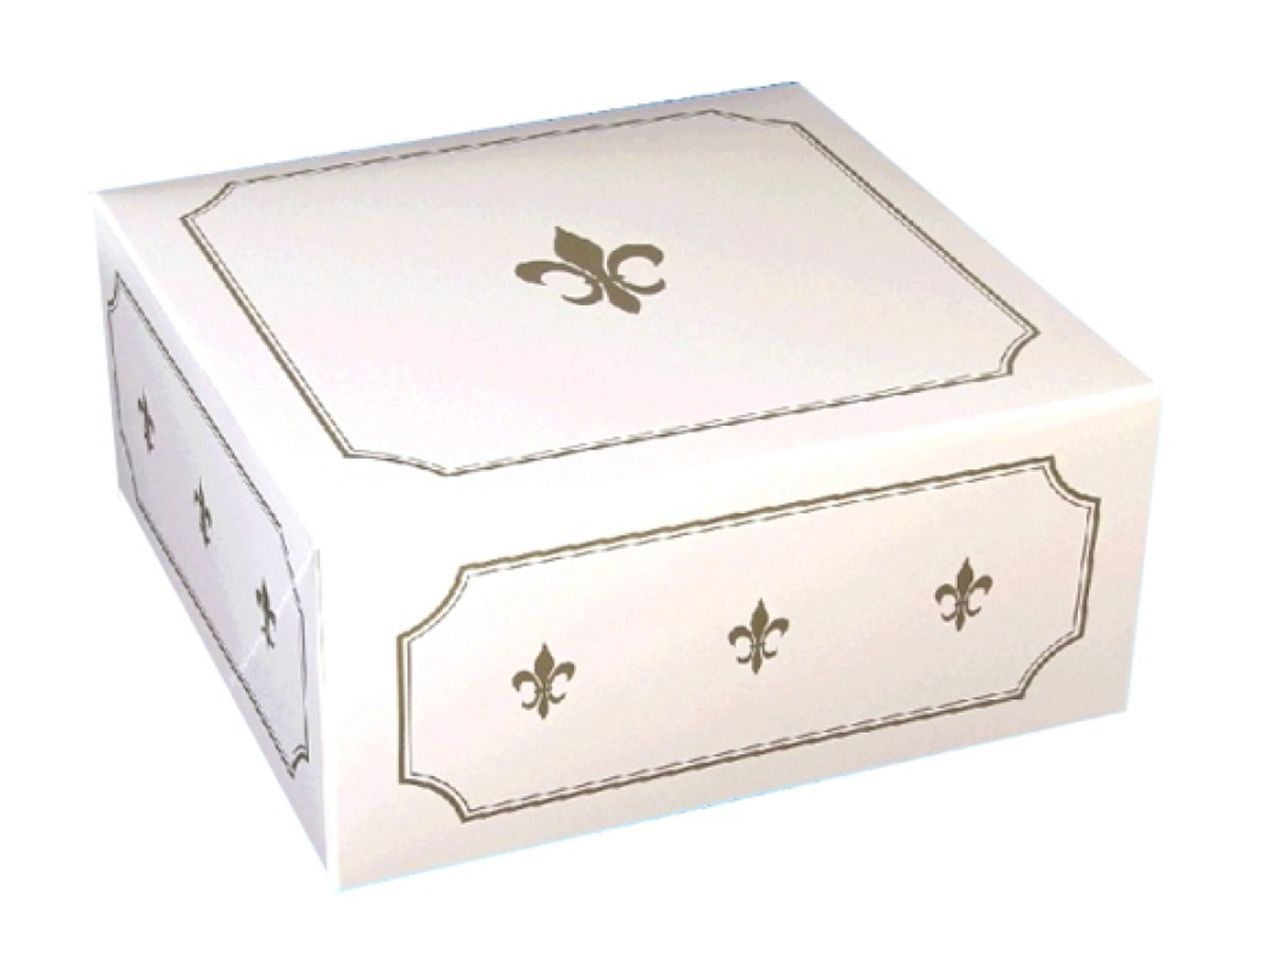 Tortenkarton 32x32x12cm, weiß-gold von House of Marie